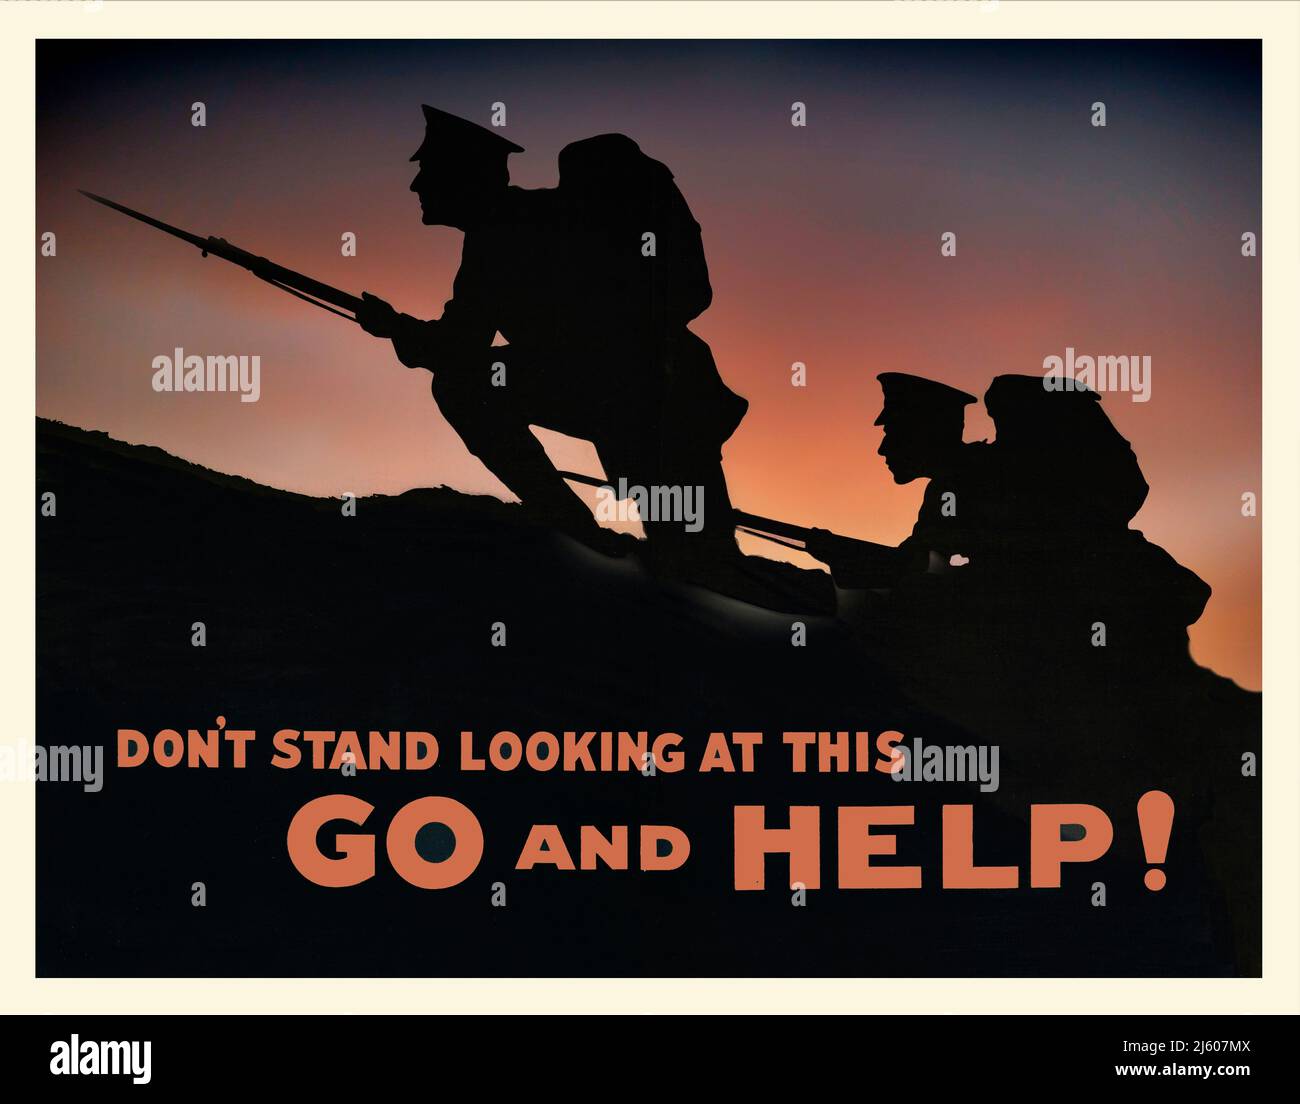 Una ricreazione di un poster di reclutamento pubblicitario britannico del 1915, con due soldati che portano bayonets alla cresta di una collina, in silhouette. Lo slogan non sta guardando questo, vada ed aiuti! Artista sconosciuto. Poster originale Alamy numero 2J607HW Foto Stock